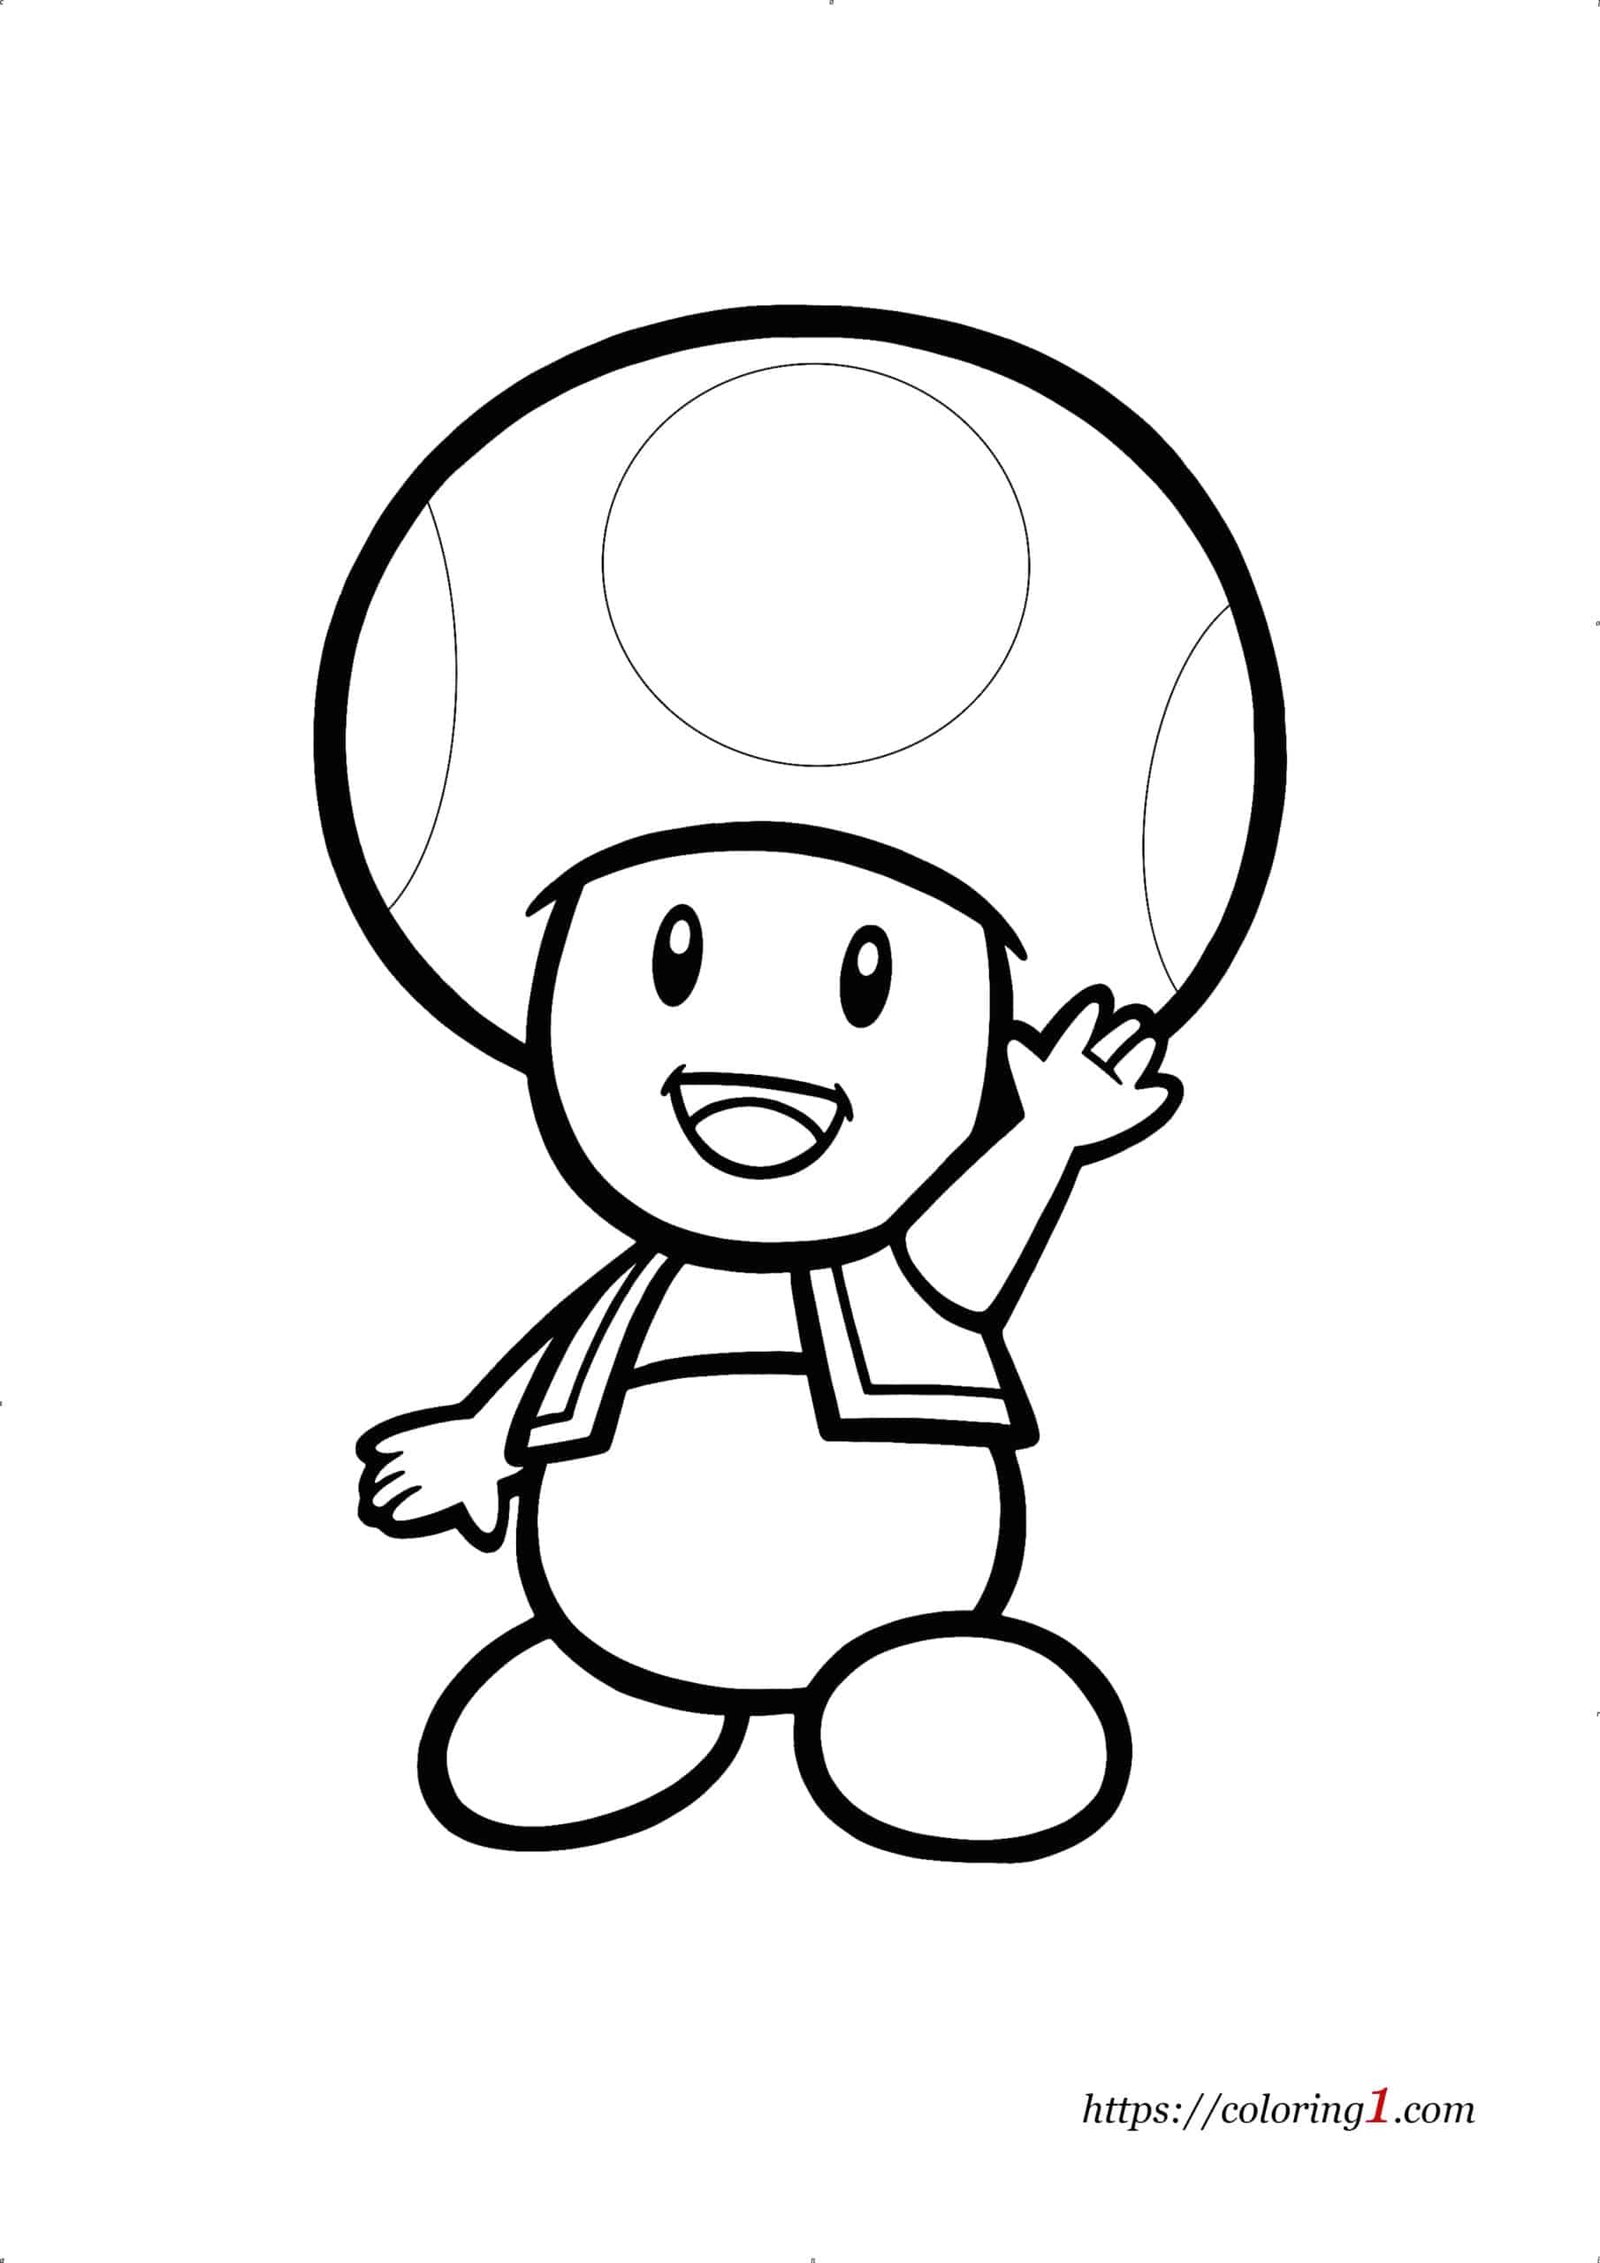 Toad Mario kleurplaat